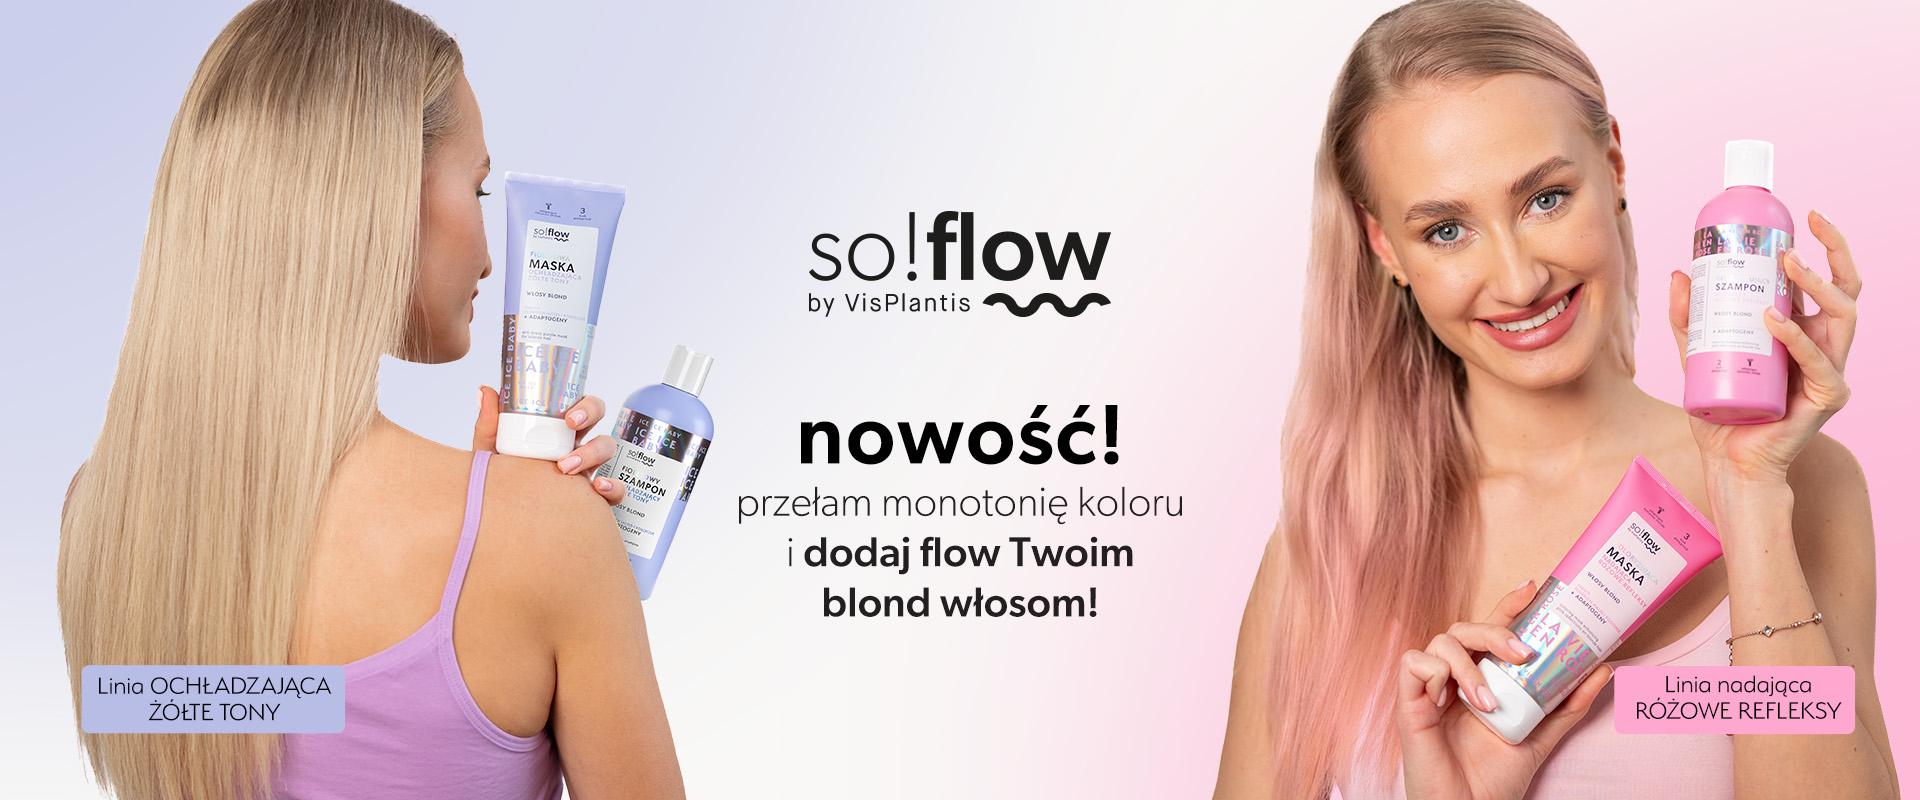 So!Flow - nowe kosmetyki dla blondynek